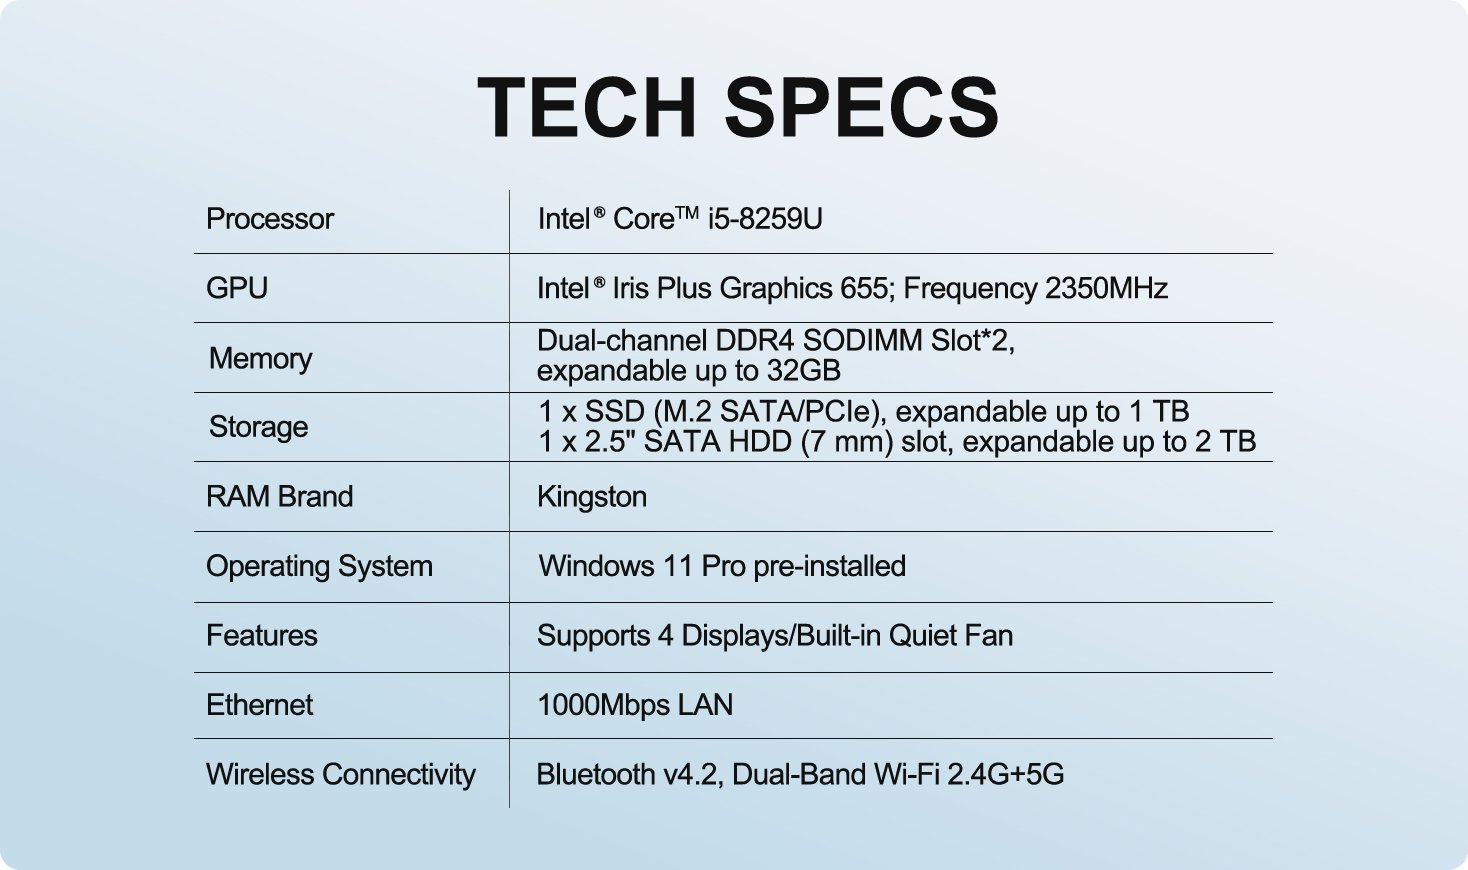 GEEKOM Mini IT8: Mini PC Intel Core i5 8th Gen